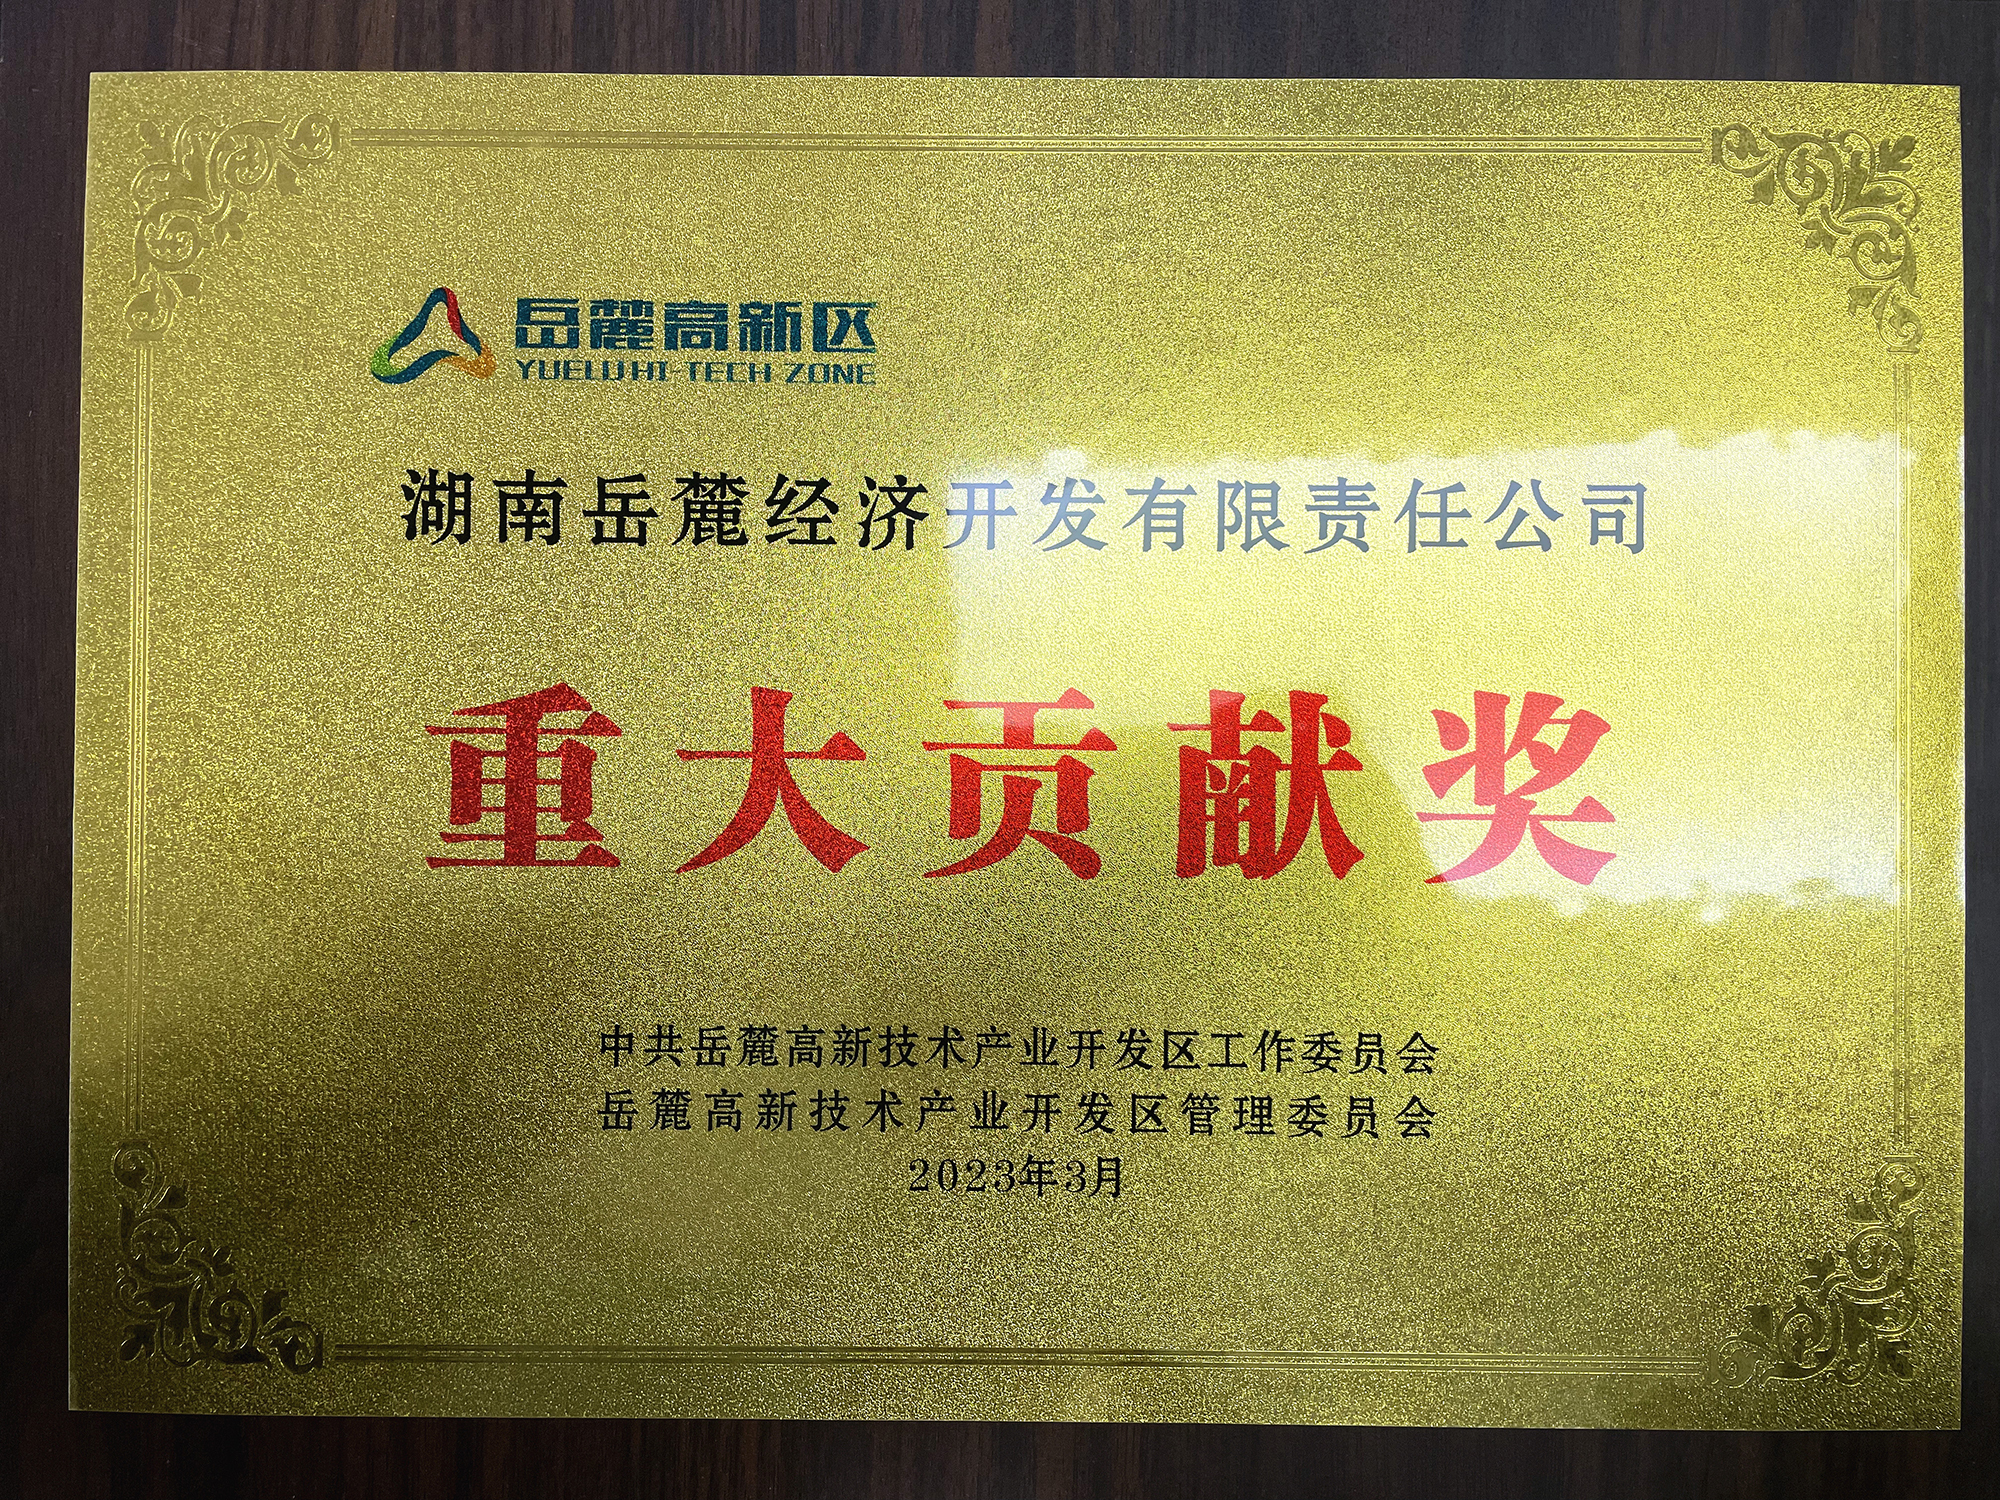 2023年3月，智谷集团下属子公司岳麓公司获得岳麓高新区重大贡献奖。